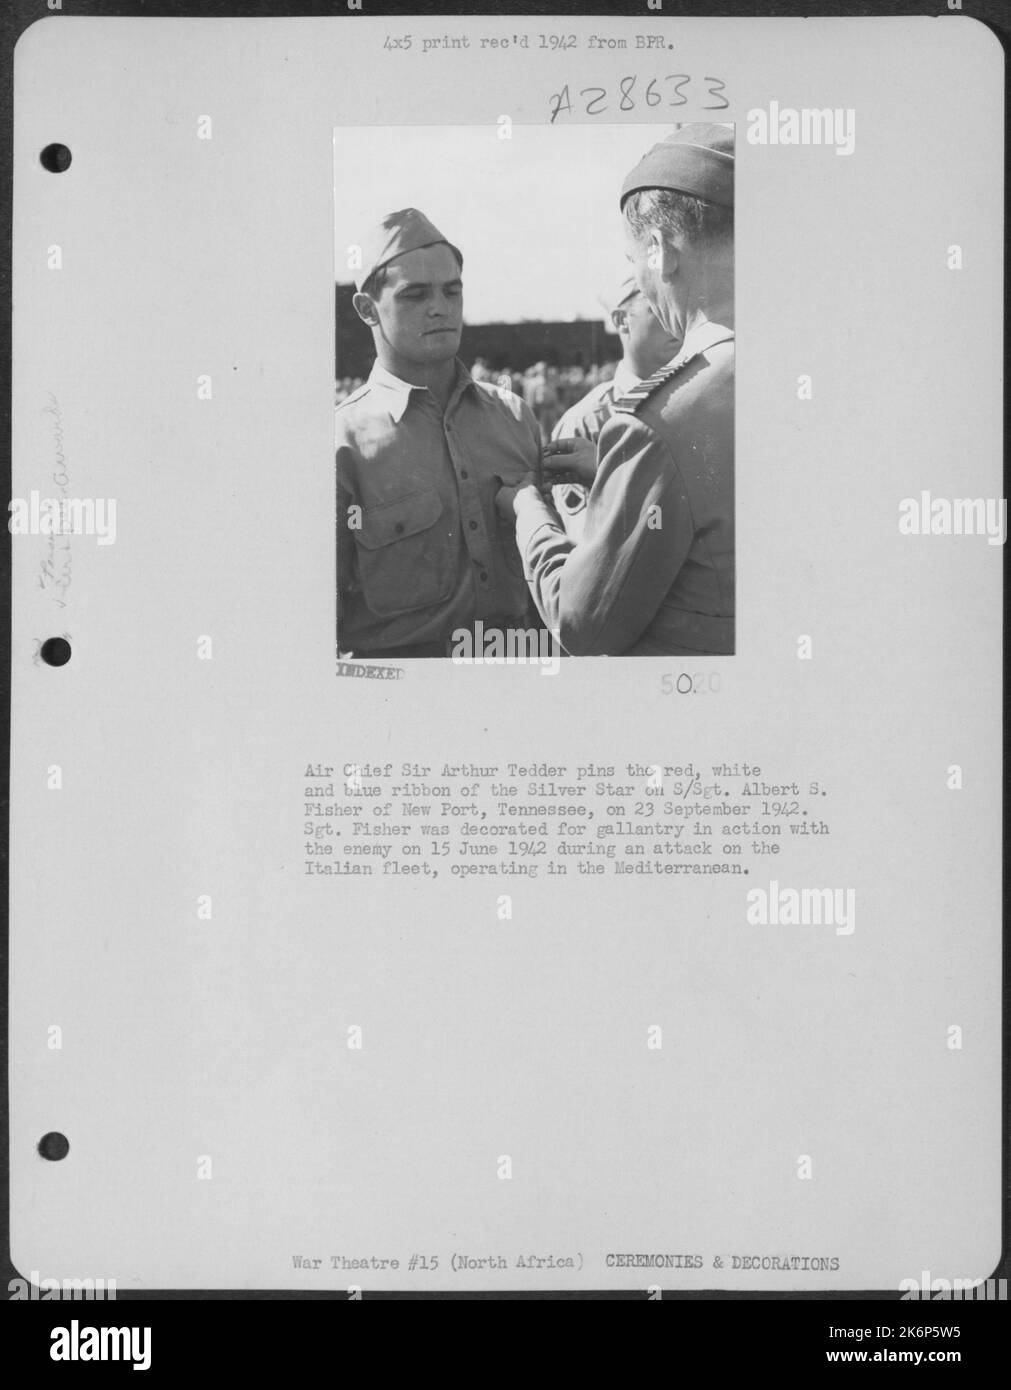 Il capo d'aria Sir Arthur Tedder informa il nastro rosso, bianco e blu della Silver Star su S/Sgt. Albert S. Fisher di New Port, Tennessee, il 23 settembre 1942. Il 15 giugno 1942, Fisher è stato decorato per la galanteria in azione con il nemico. Pescatore SGT Foto Stock